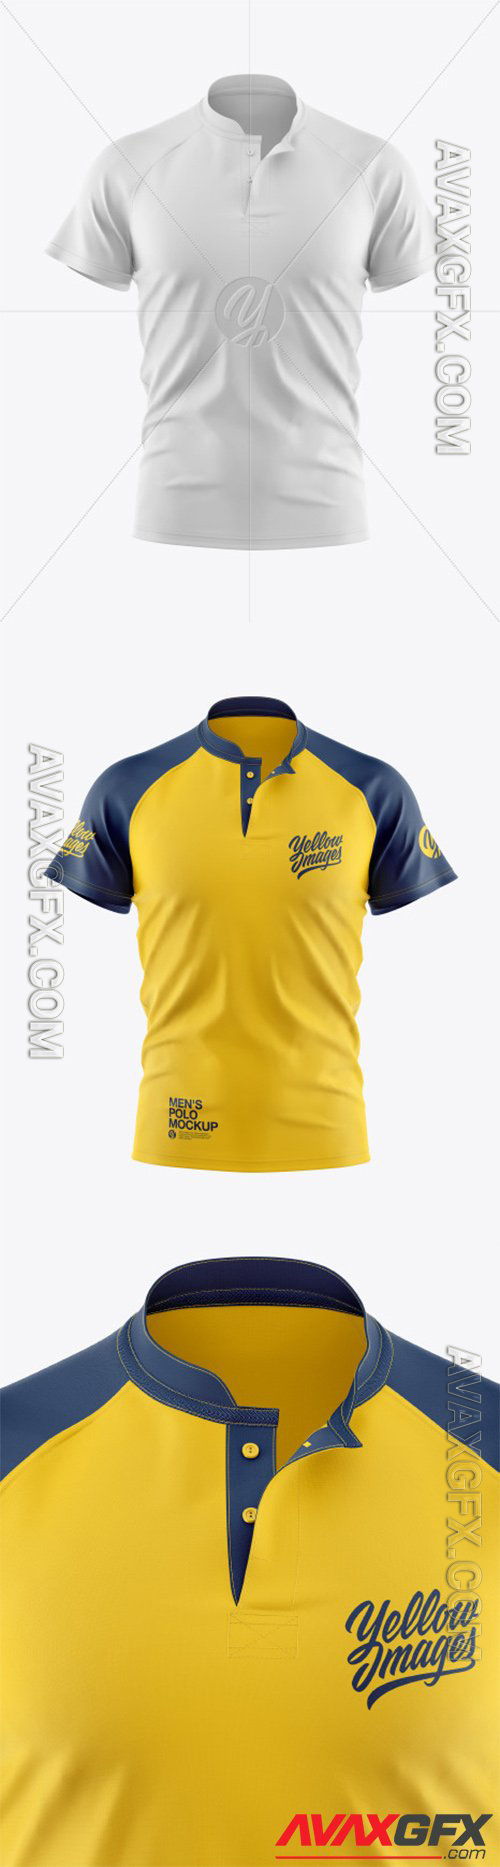 Men's Polo Shirt Mockup 56521